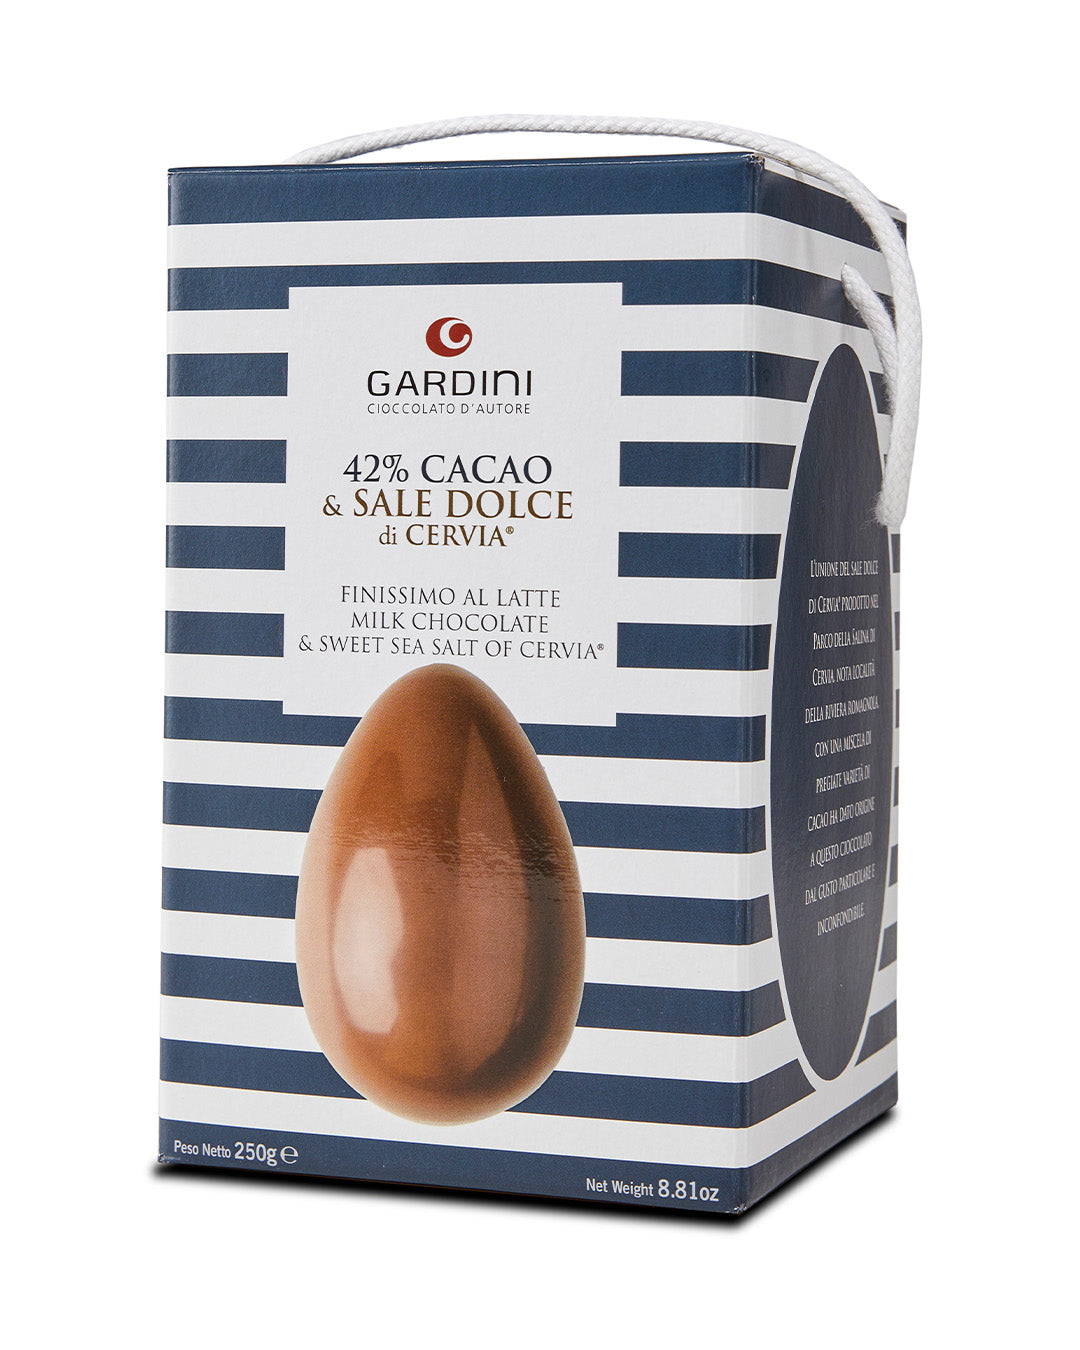 Uovo “Cacao & Sale Dolce” di Cervia - Gardini